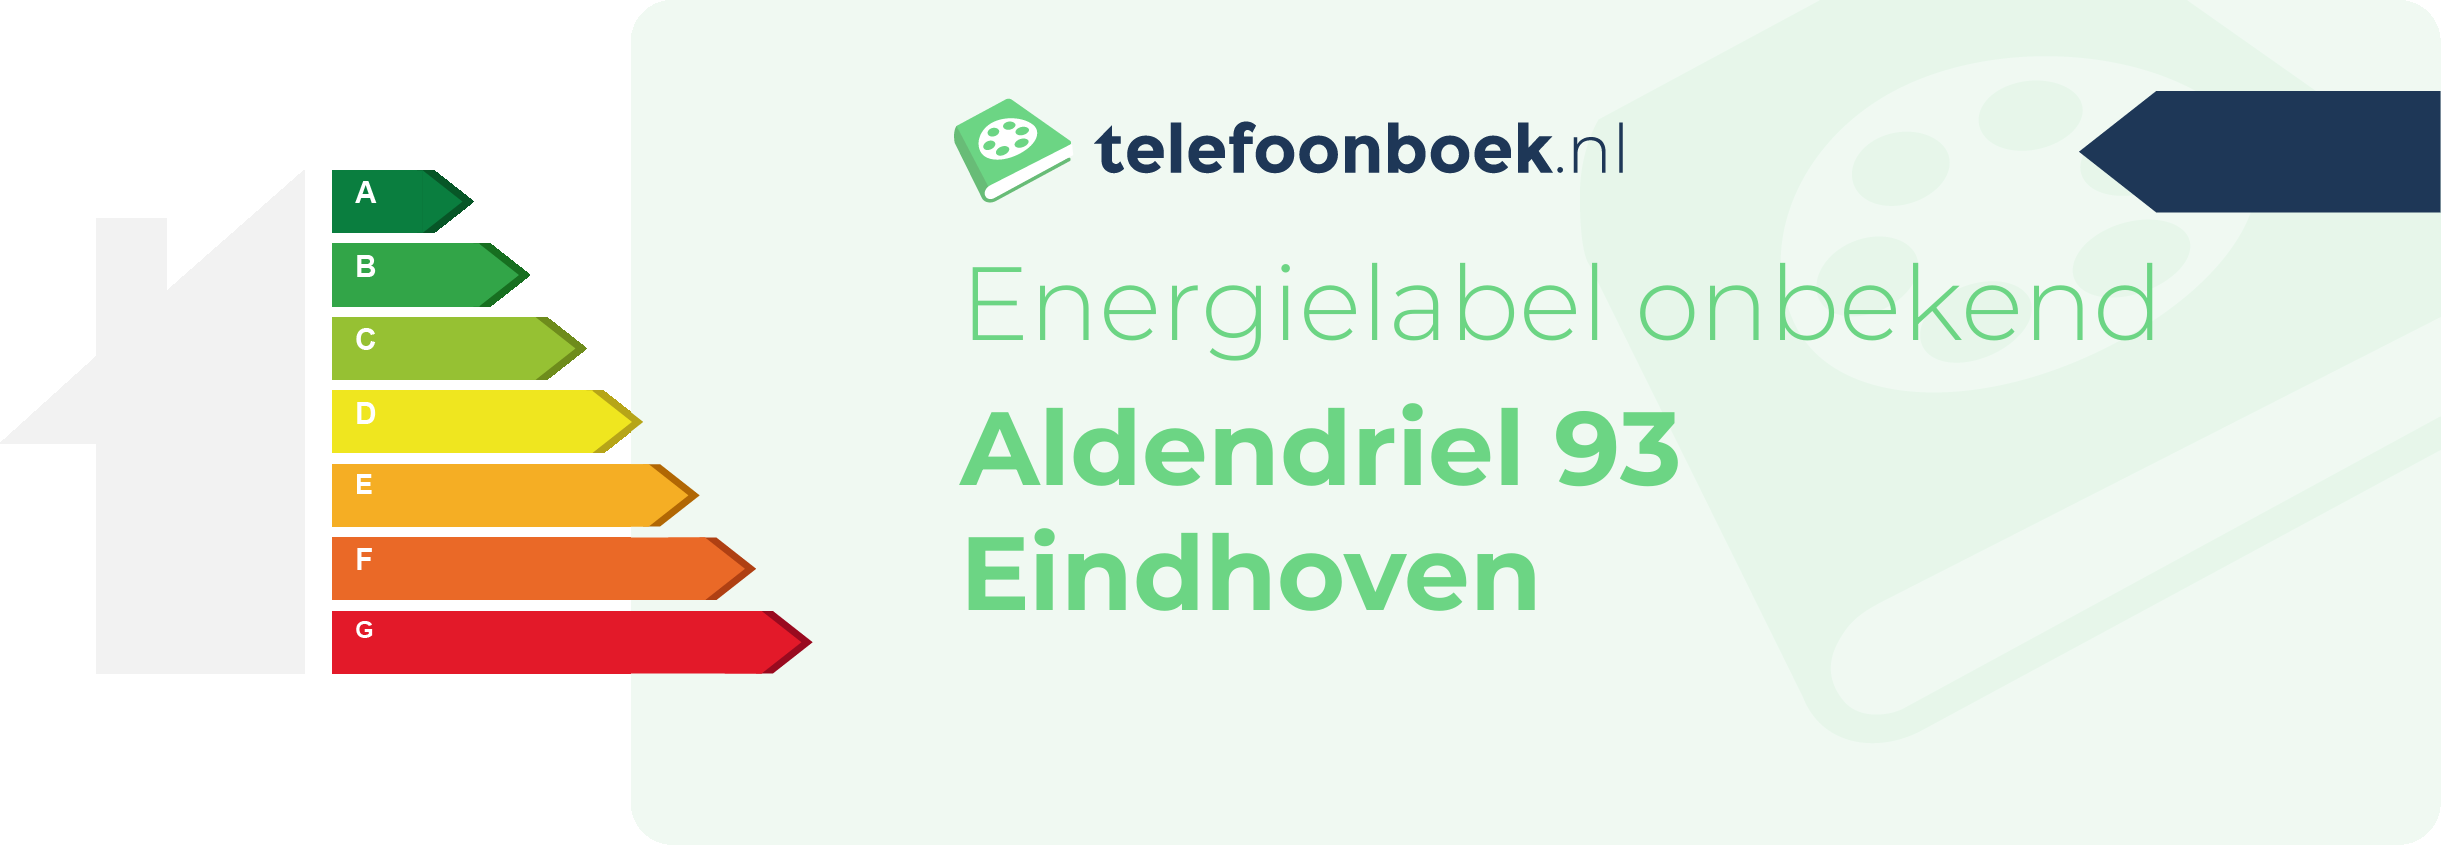 Energielabel Aldendriel 93 Eindhoven